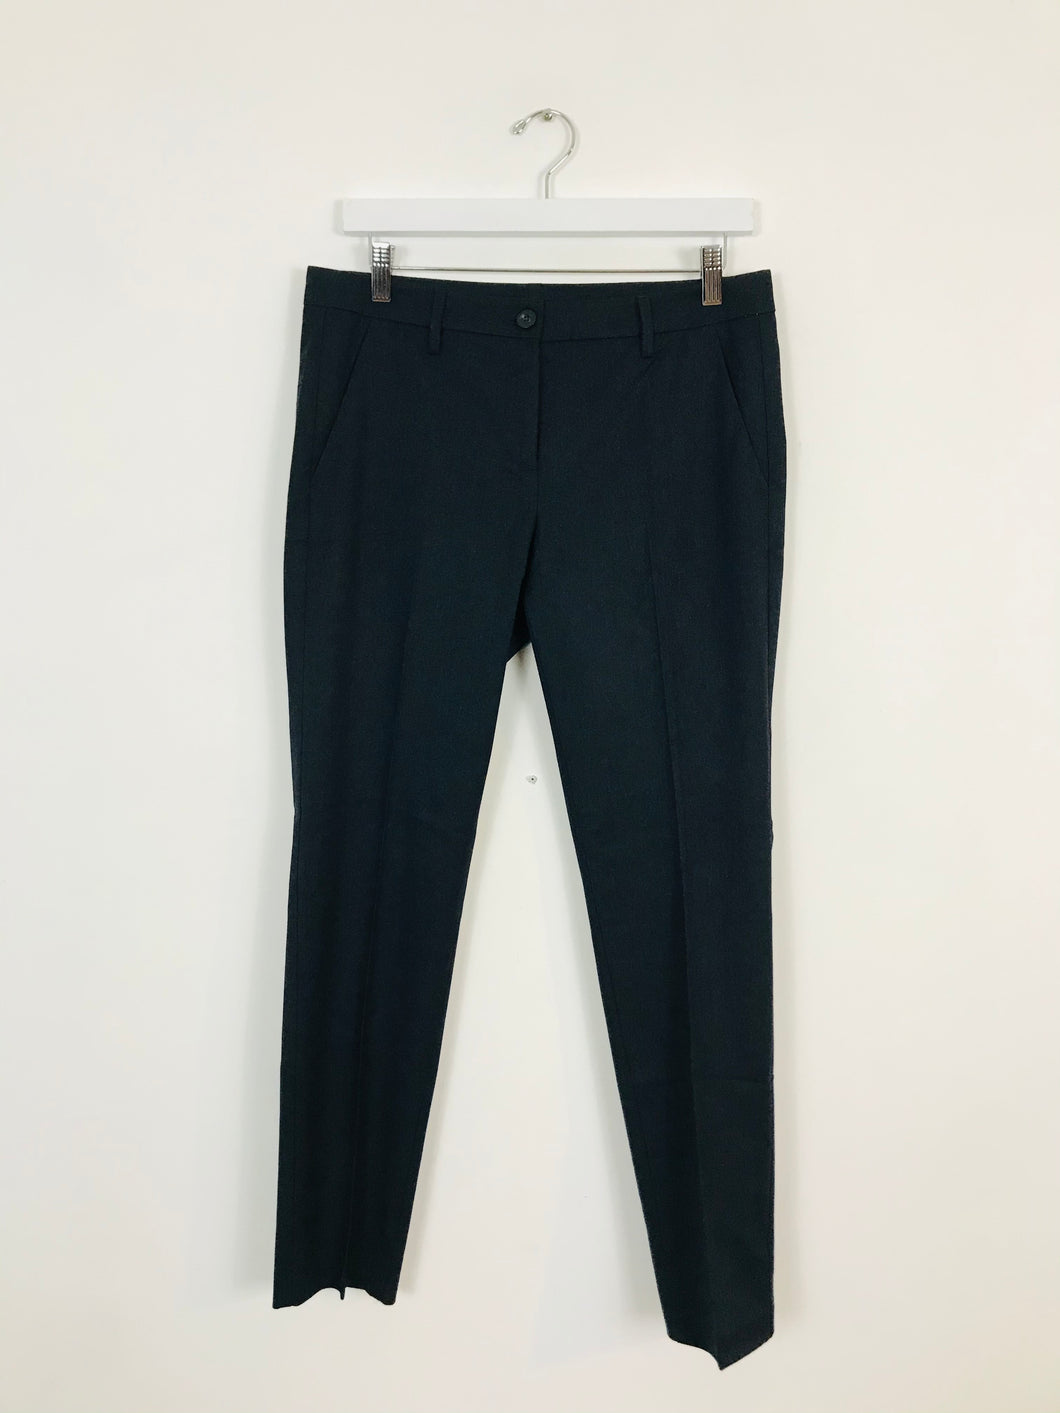 Benetton Women’s Suit Trousers | UK10 W31 L28 | Grey